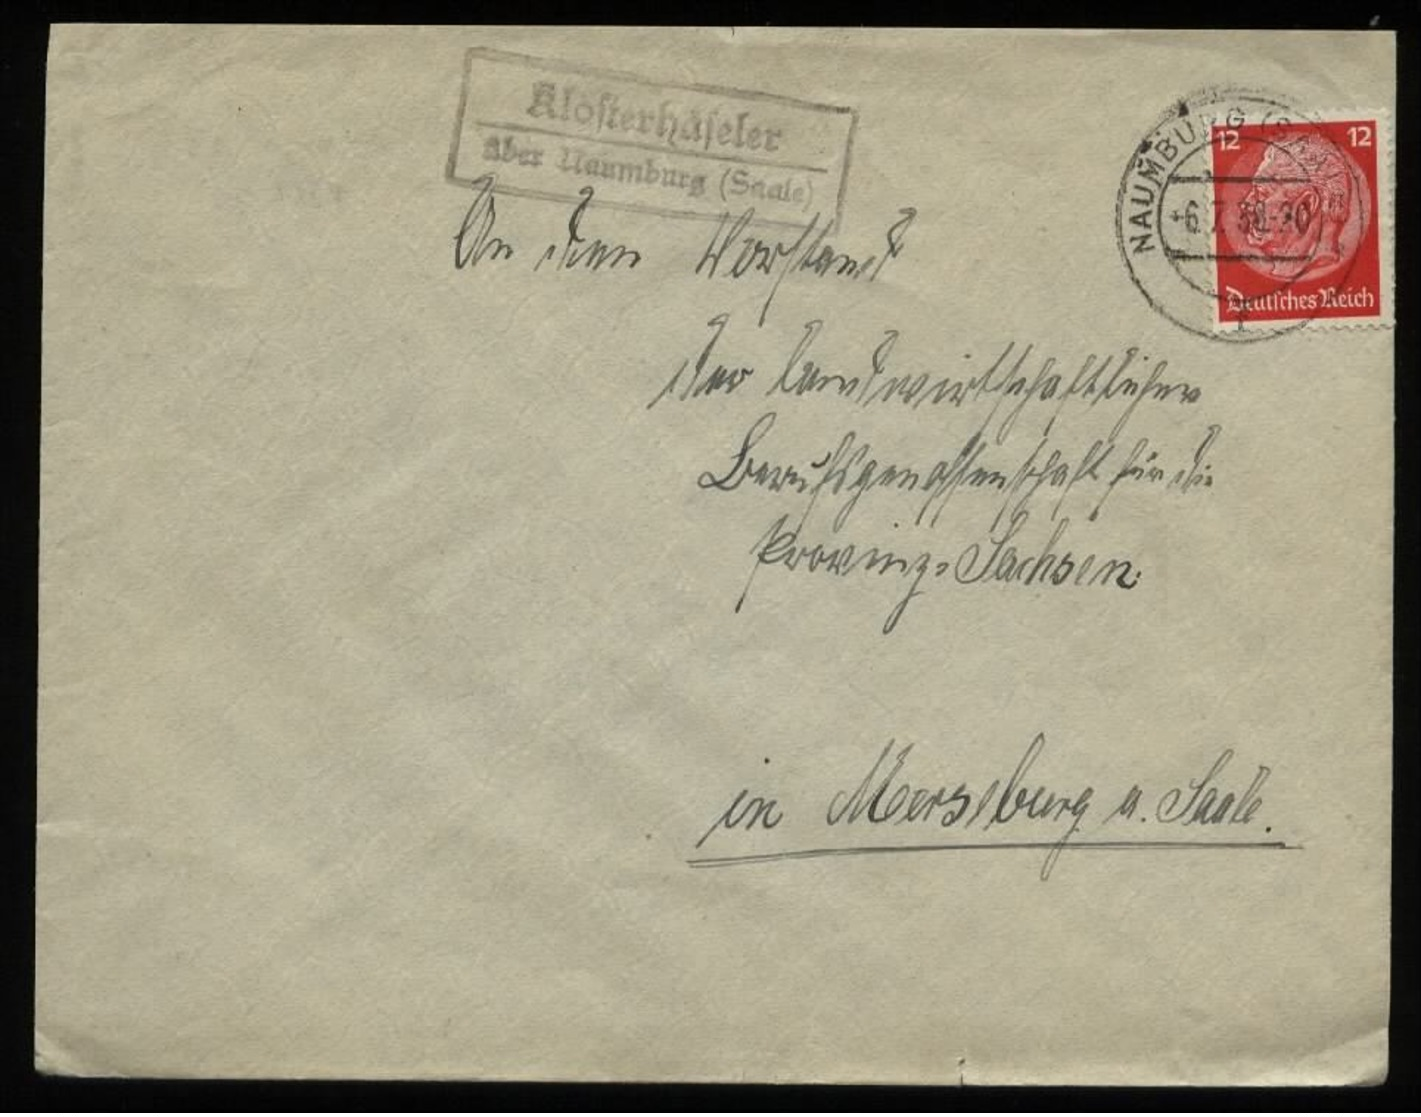 WW II DR Briefumschlag : Gebraucht Mit Landpoststempel Klosterhäseler über Naumburg - Merseburg 1938 , Bedarfserhaltun - Covers & Documents